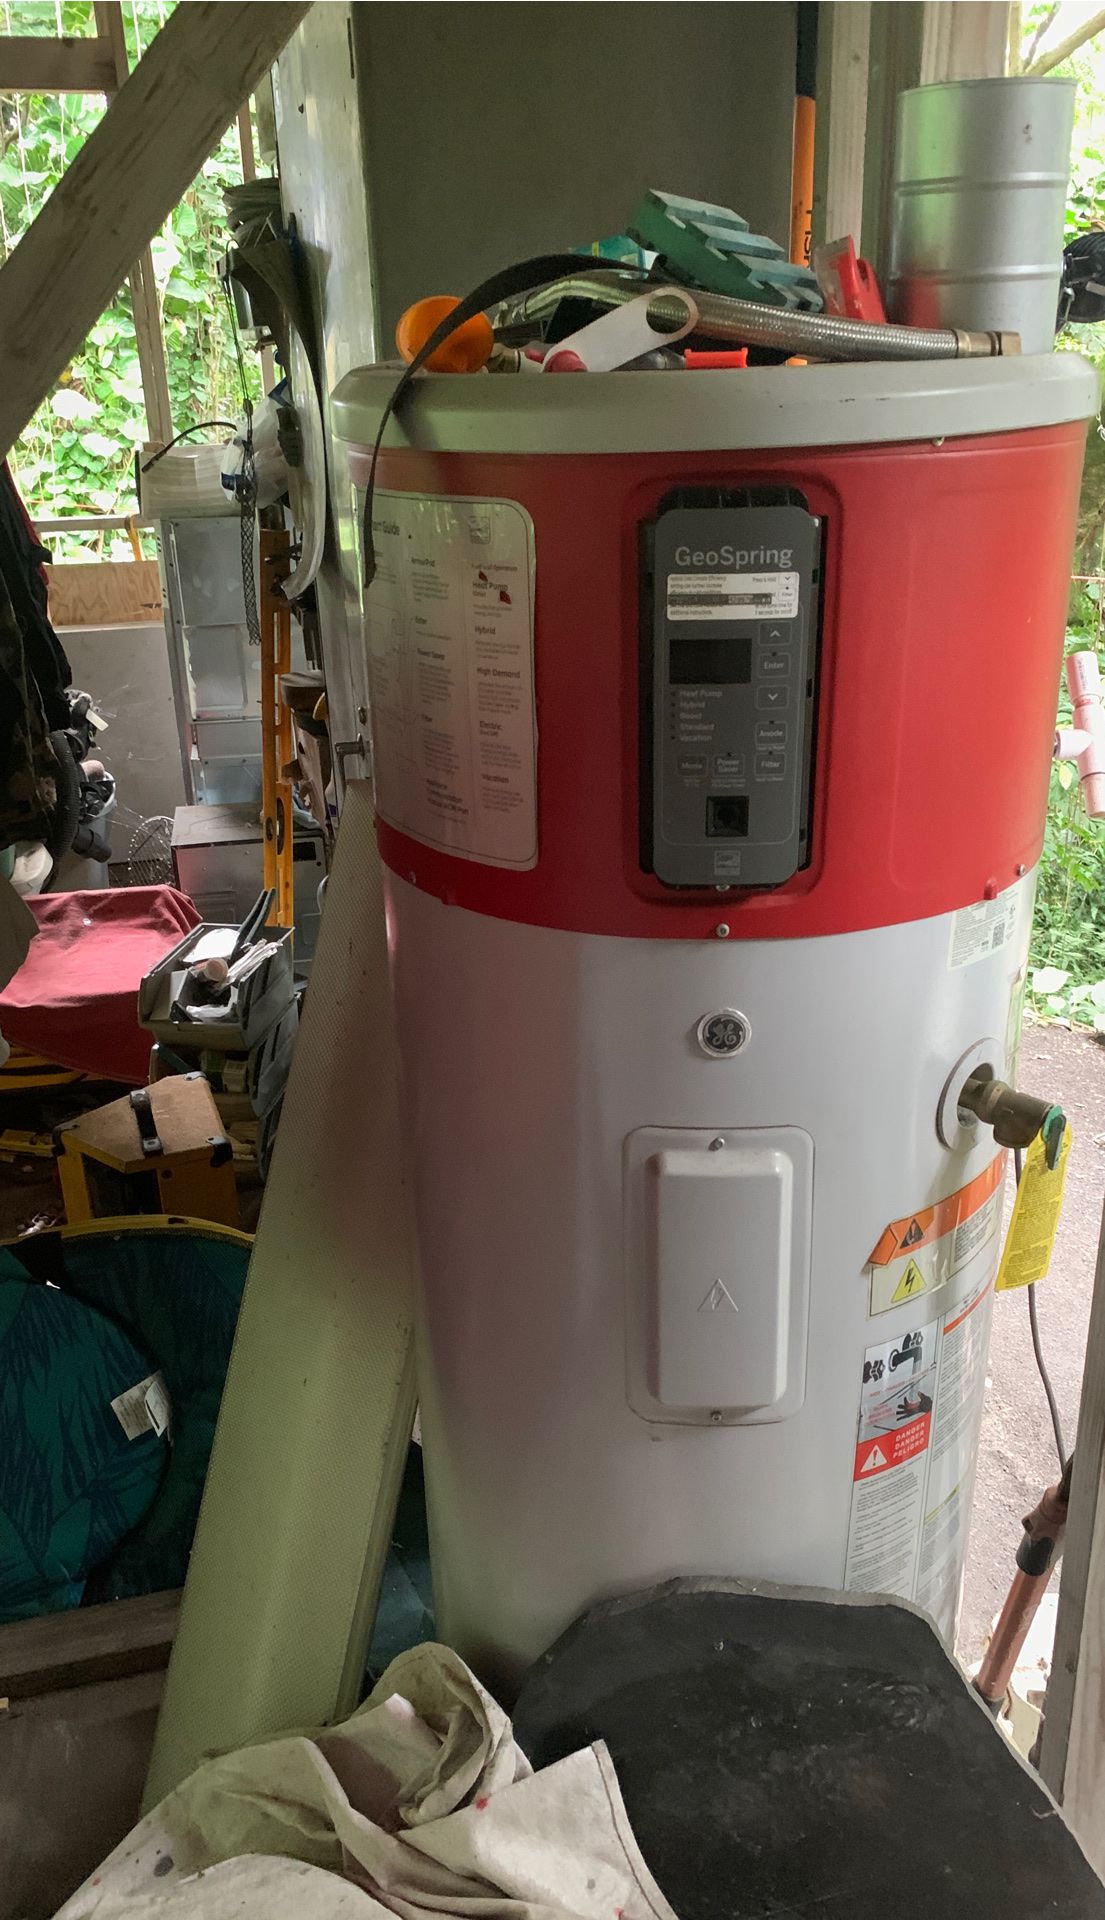 GE geo spring water heater